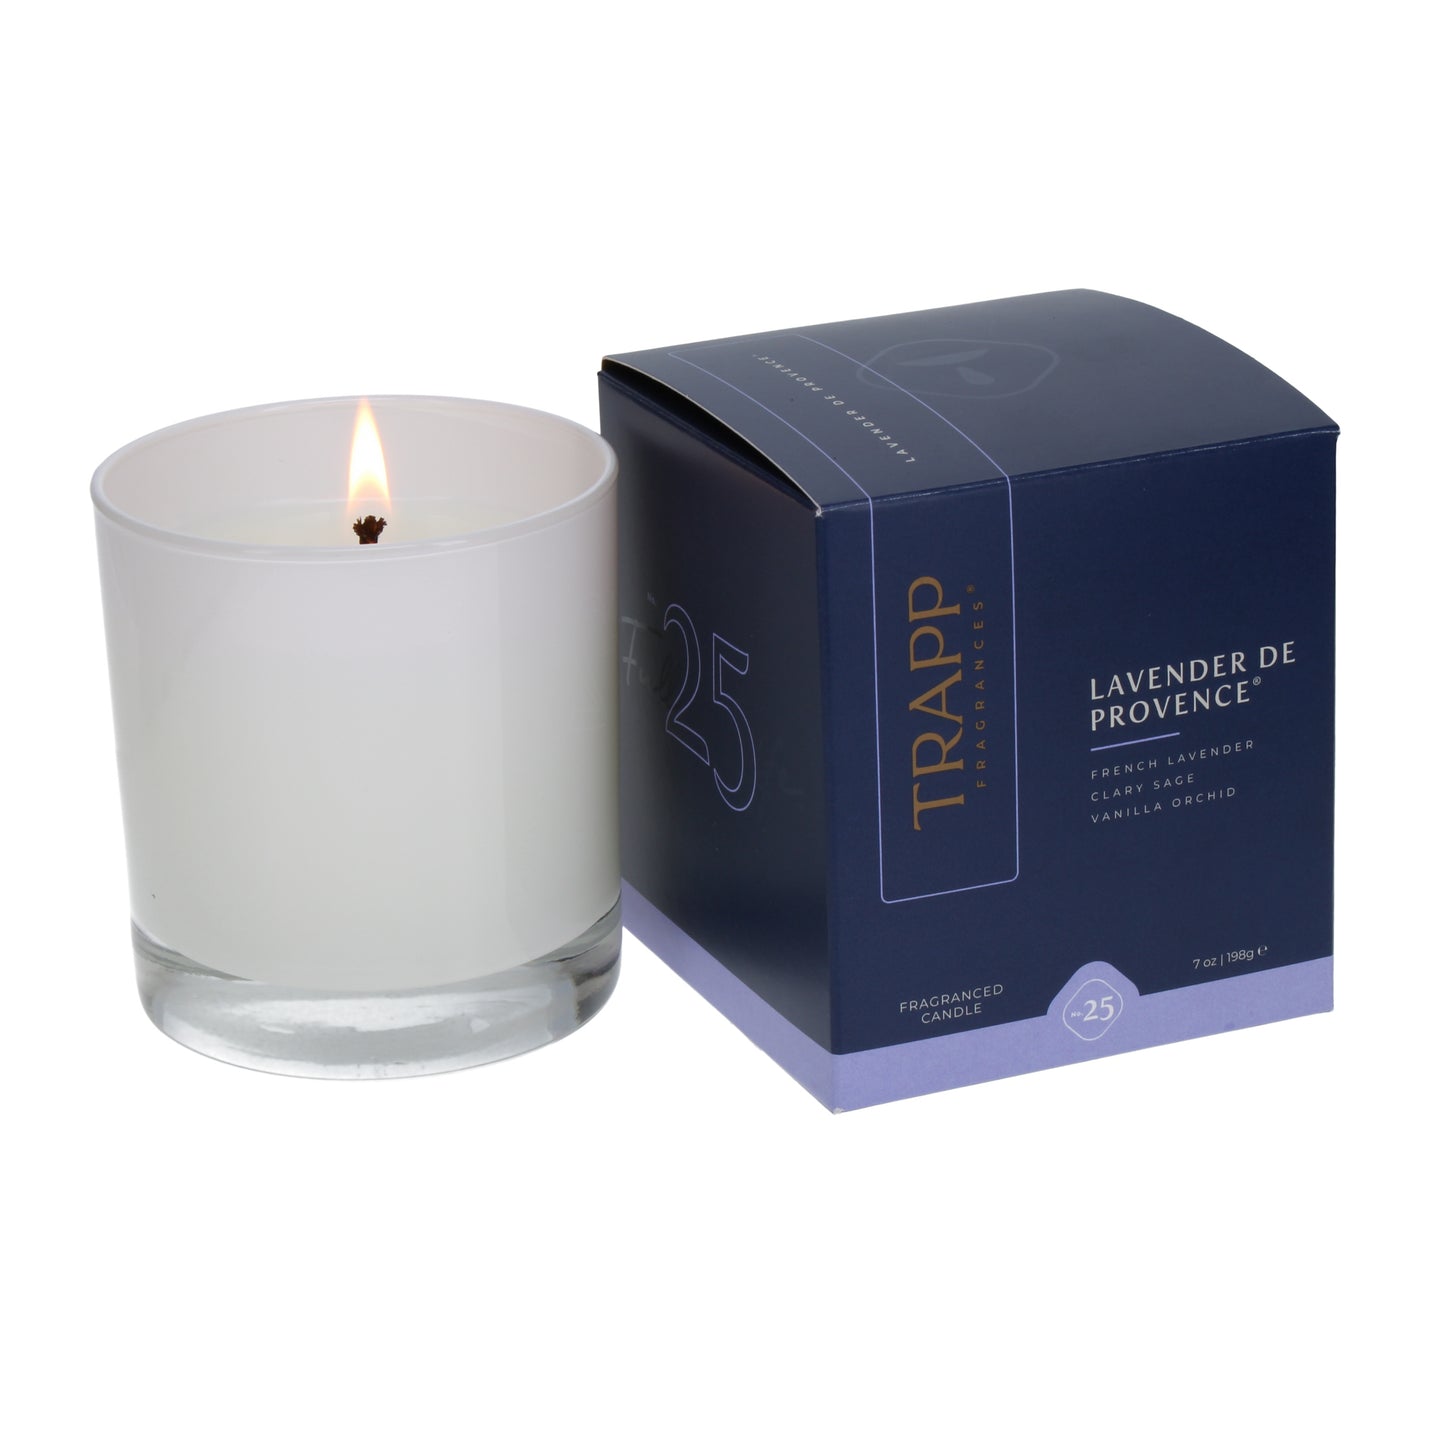 No. 25 Lavender de Provence 7 oz. Candle in Signature Box Image 2